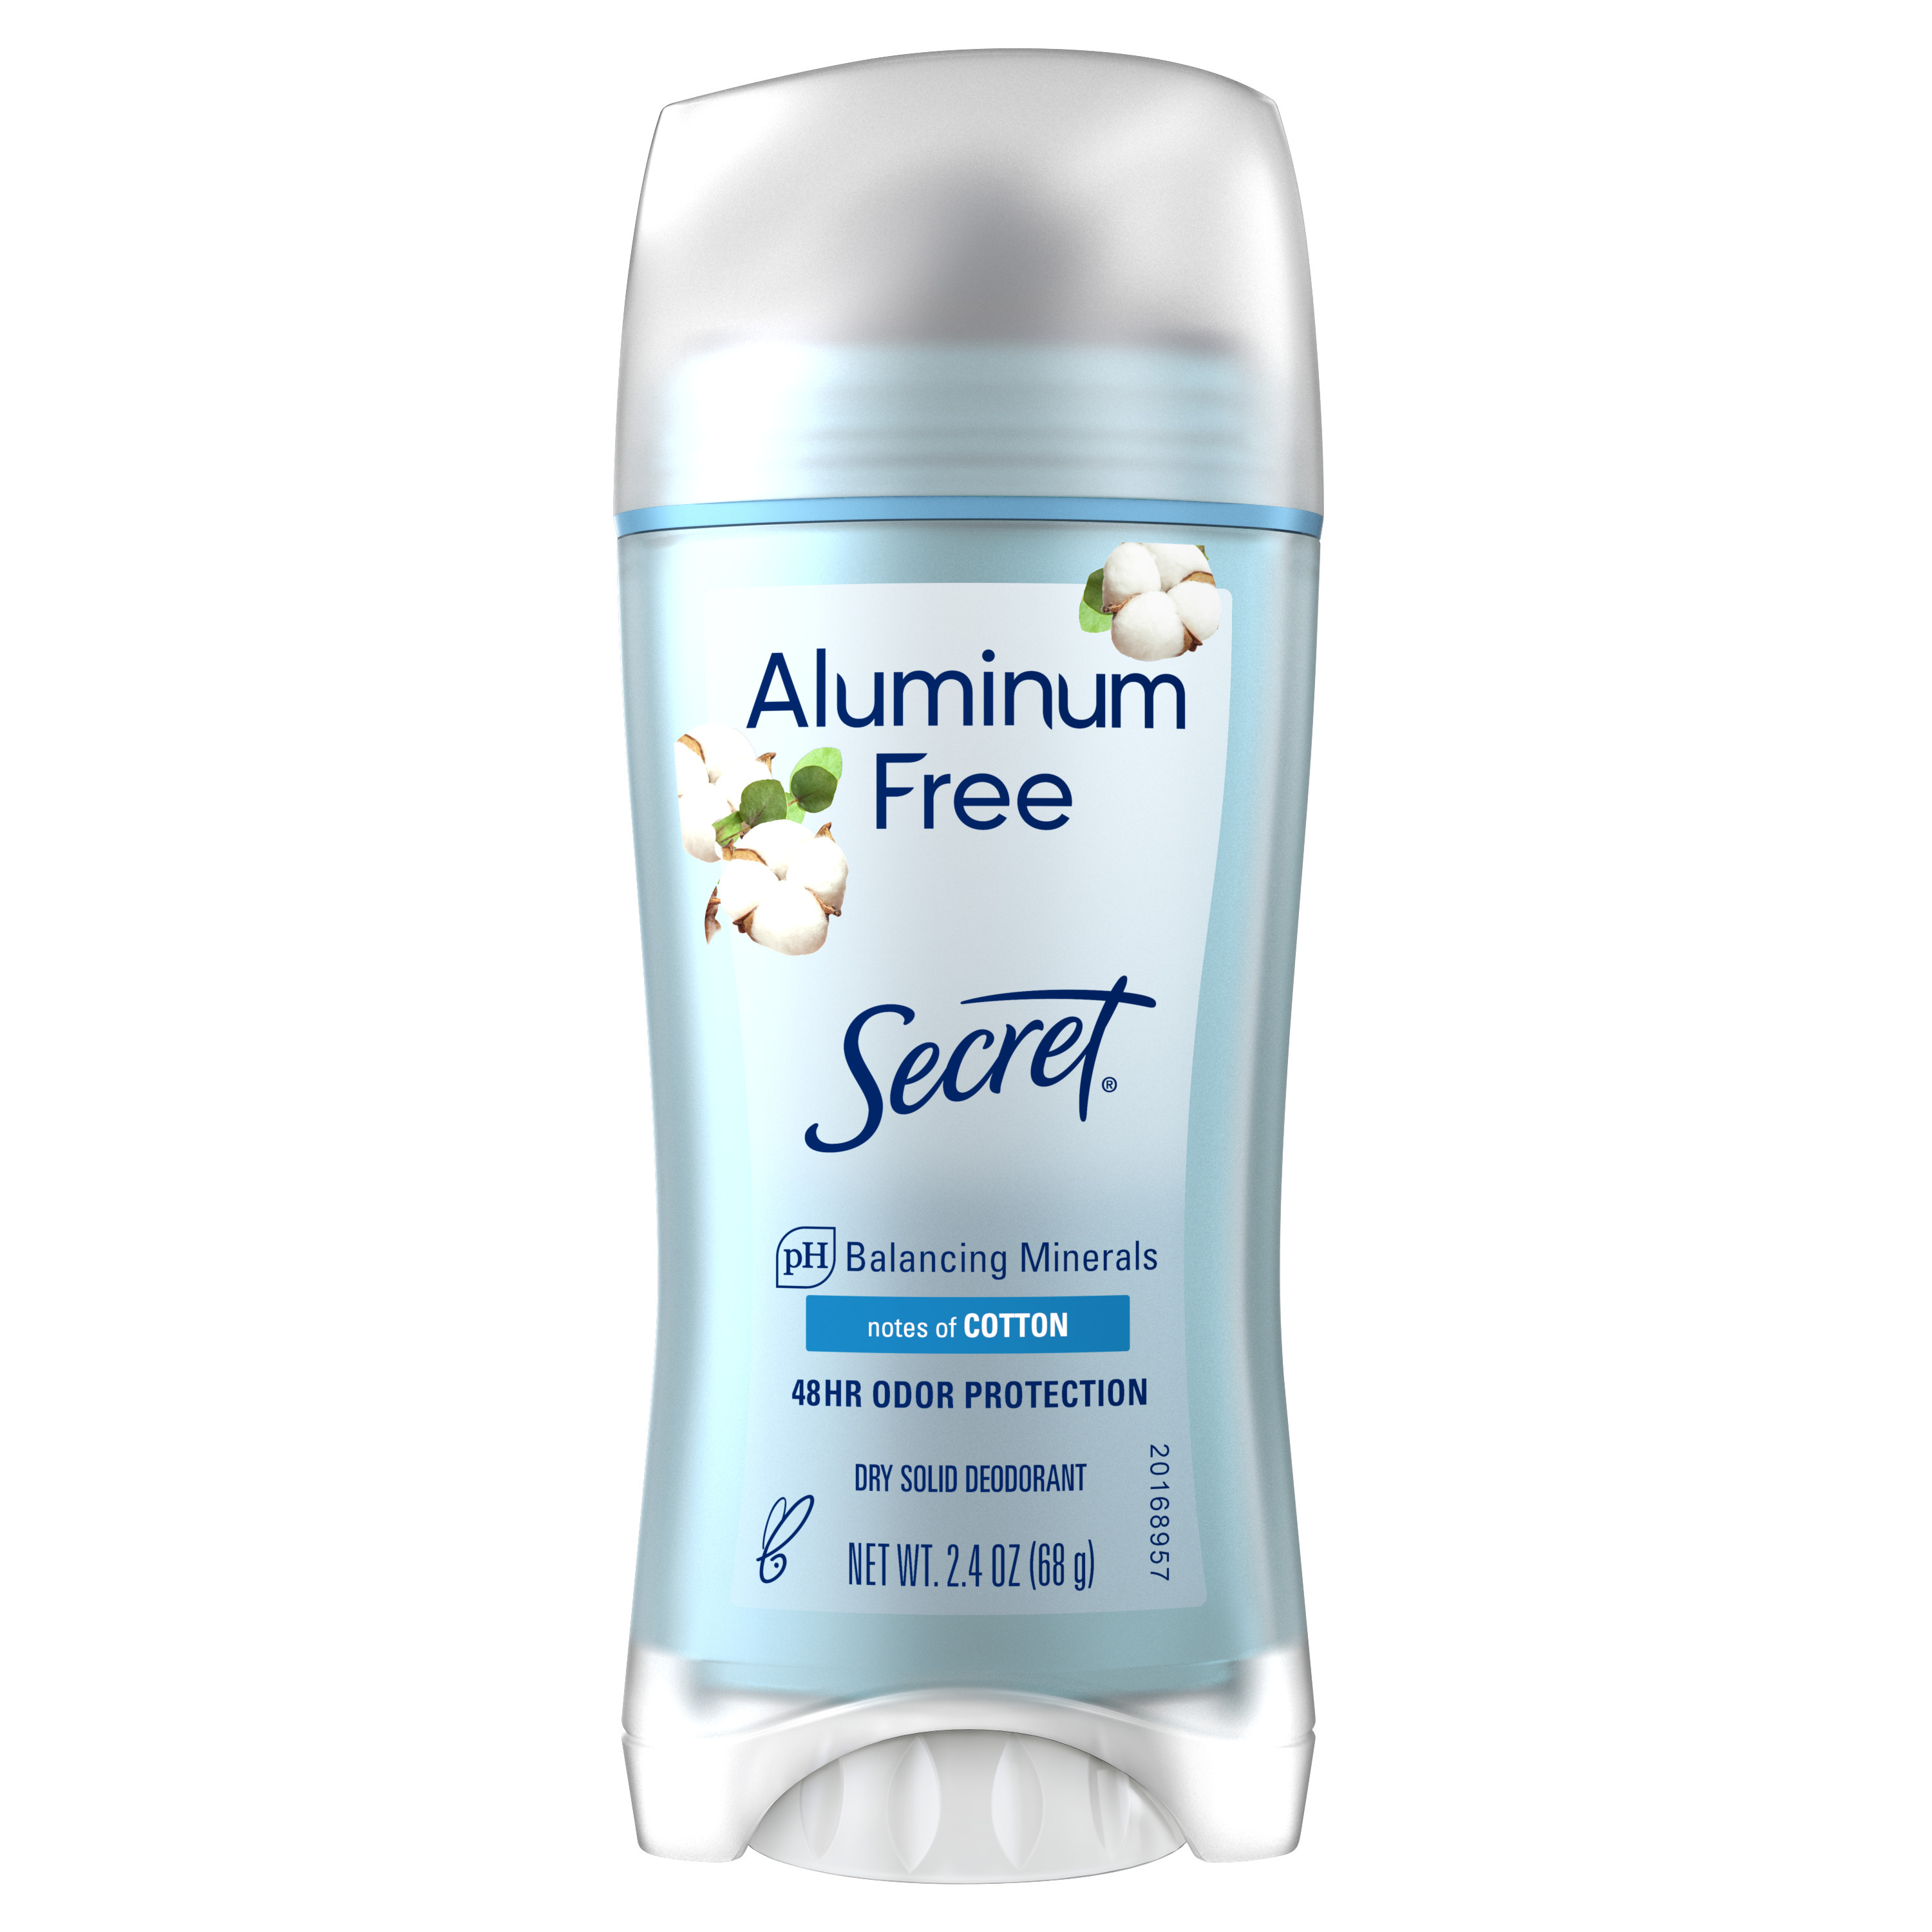 Secret Aluminum Free Deodorant for Women, Cotton, 2.4 oz - image 2 of 12